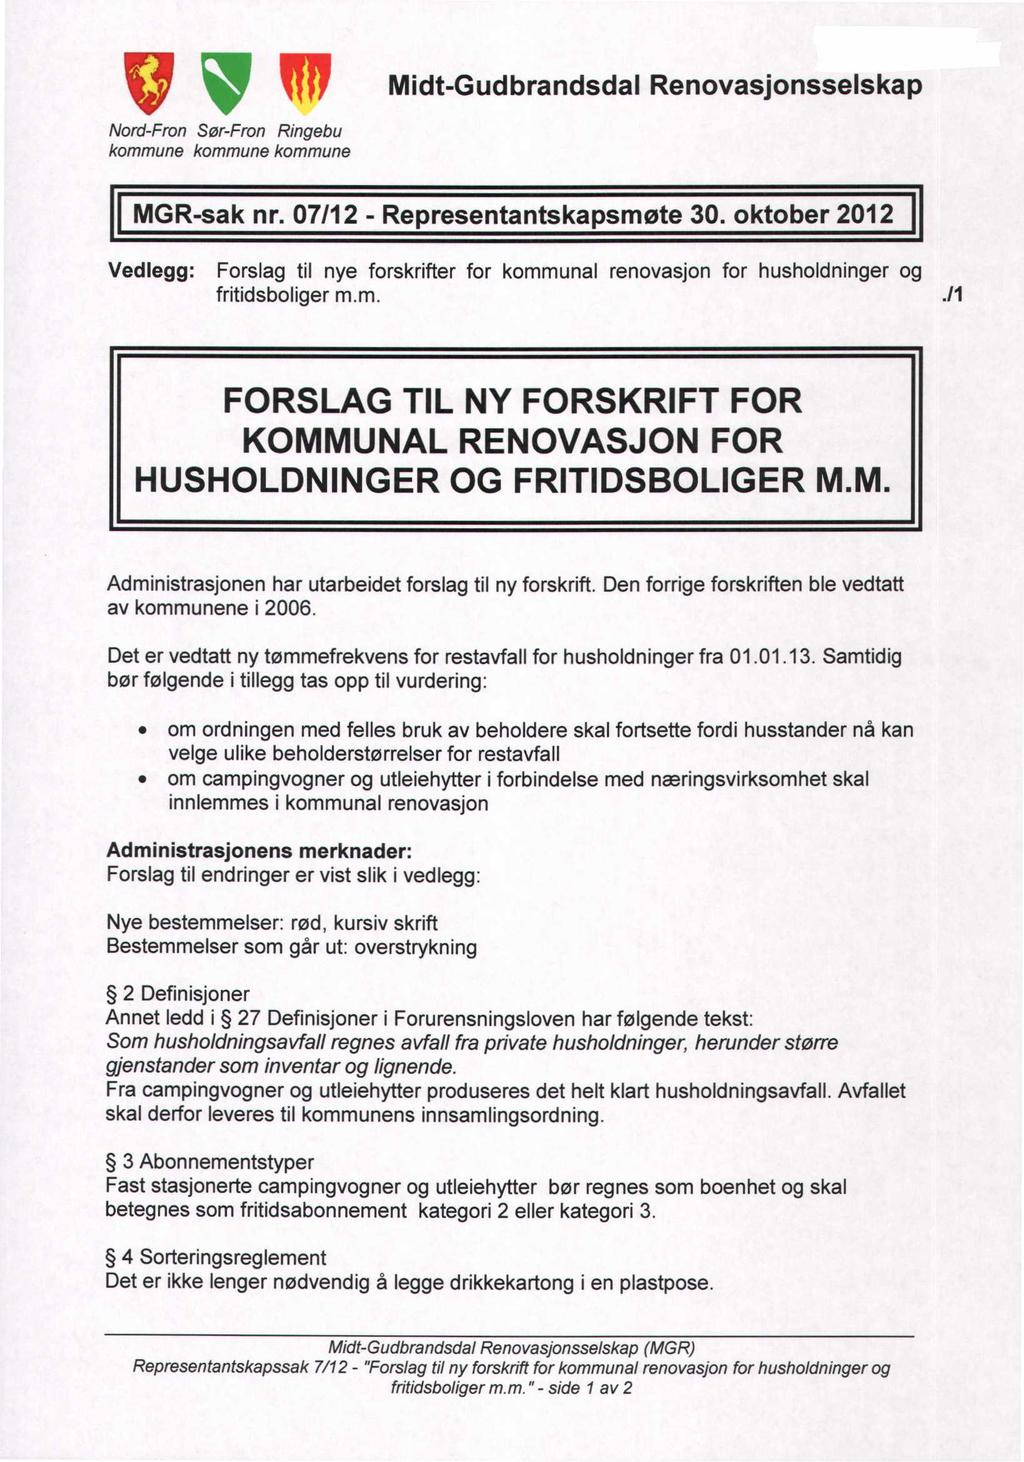 Q, Midt-Gudbrandsdal Renovasjonsselskap Nord-Fron Sør-Fron Ringebu kommune kommune kommune MGR-sak nr. 7112 - Representantskapsmøte 3.